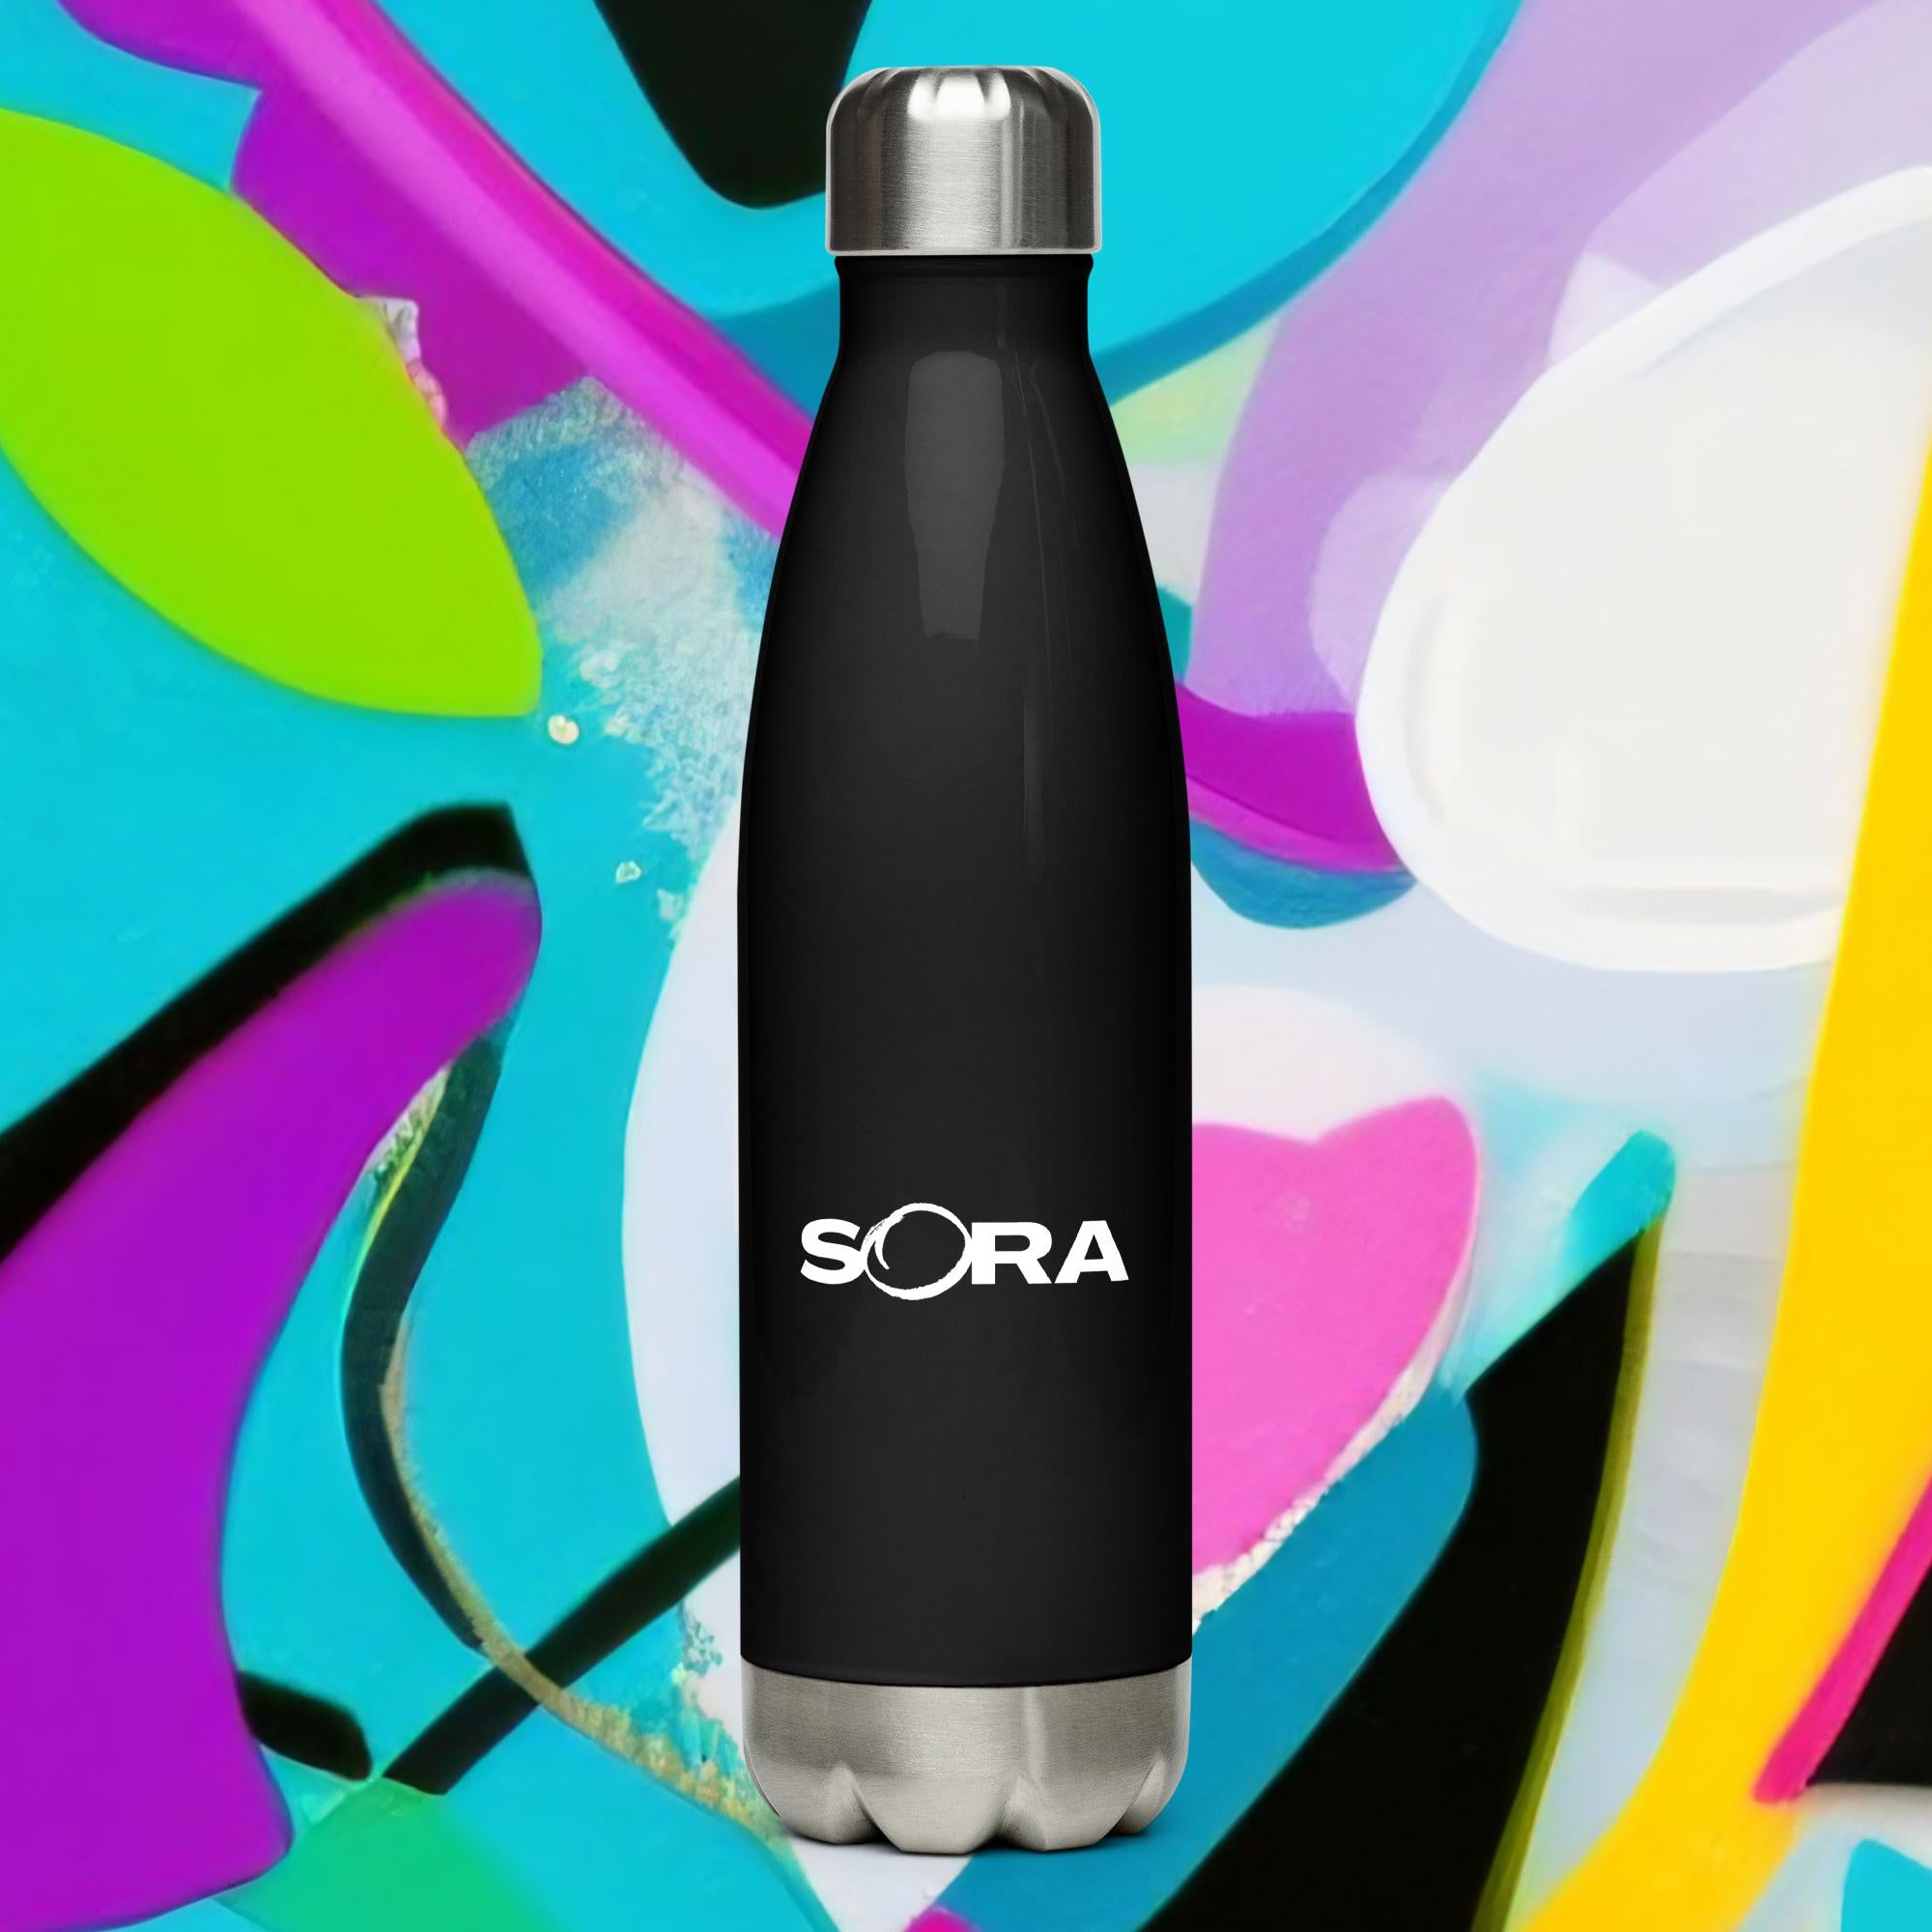 Sora water bottle